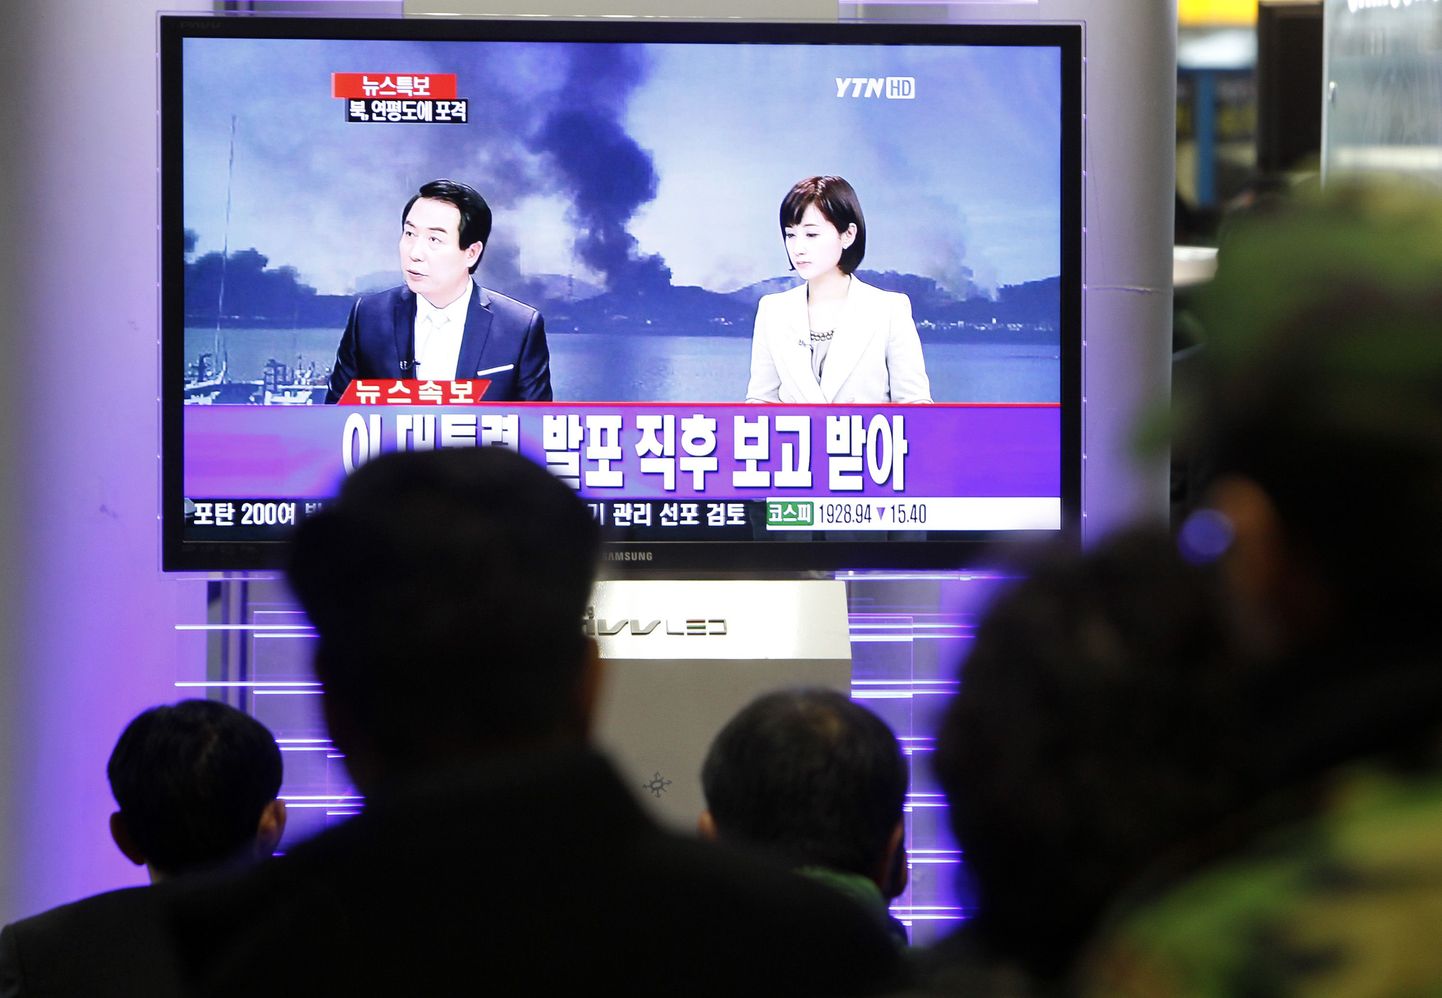 Новости об обстреле на корейском телевидении.